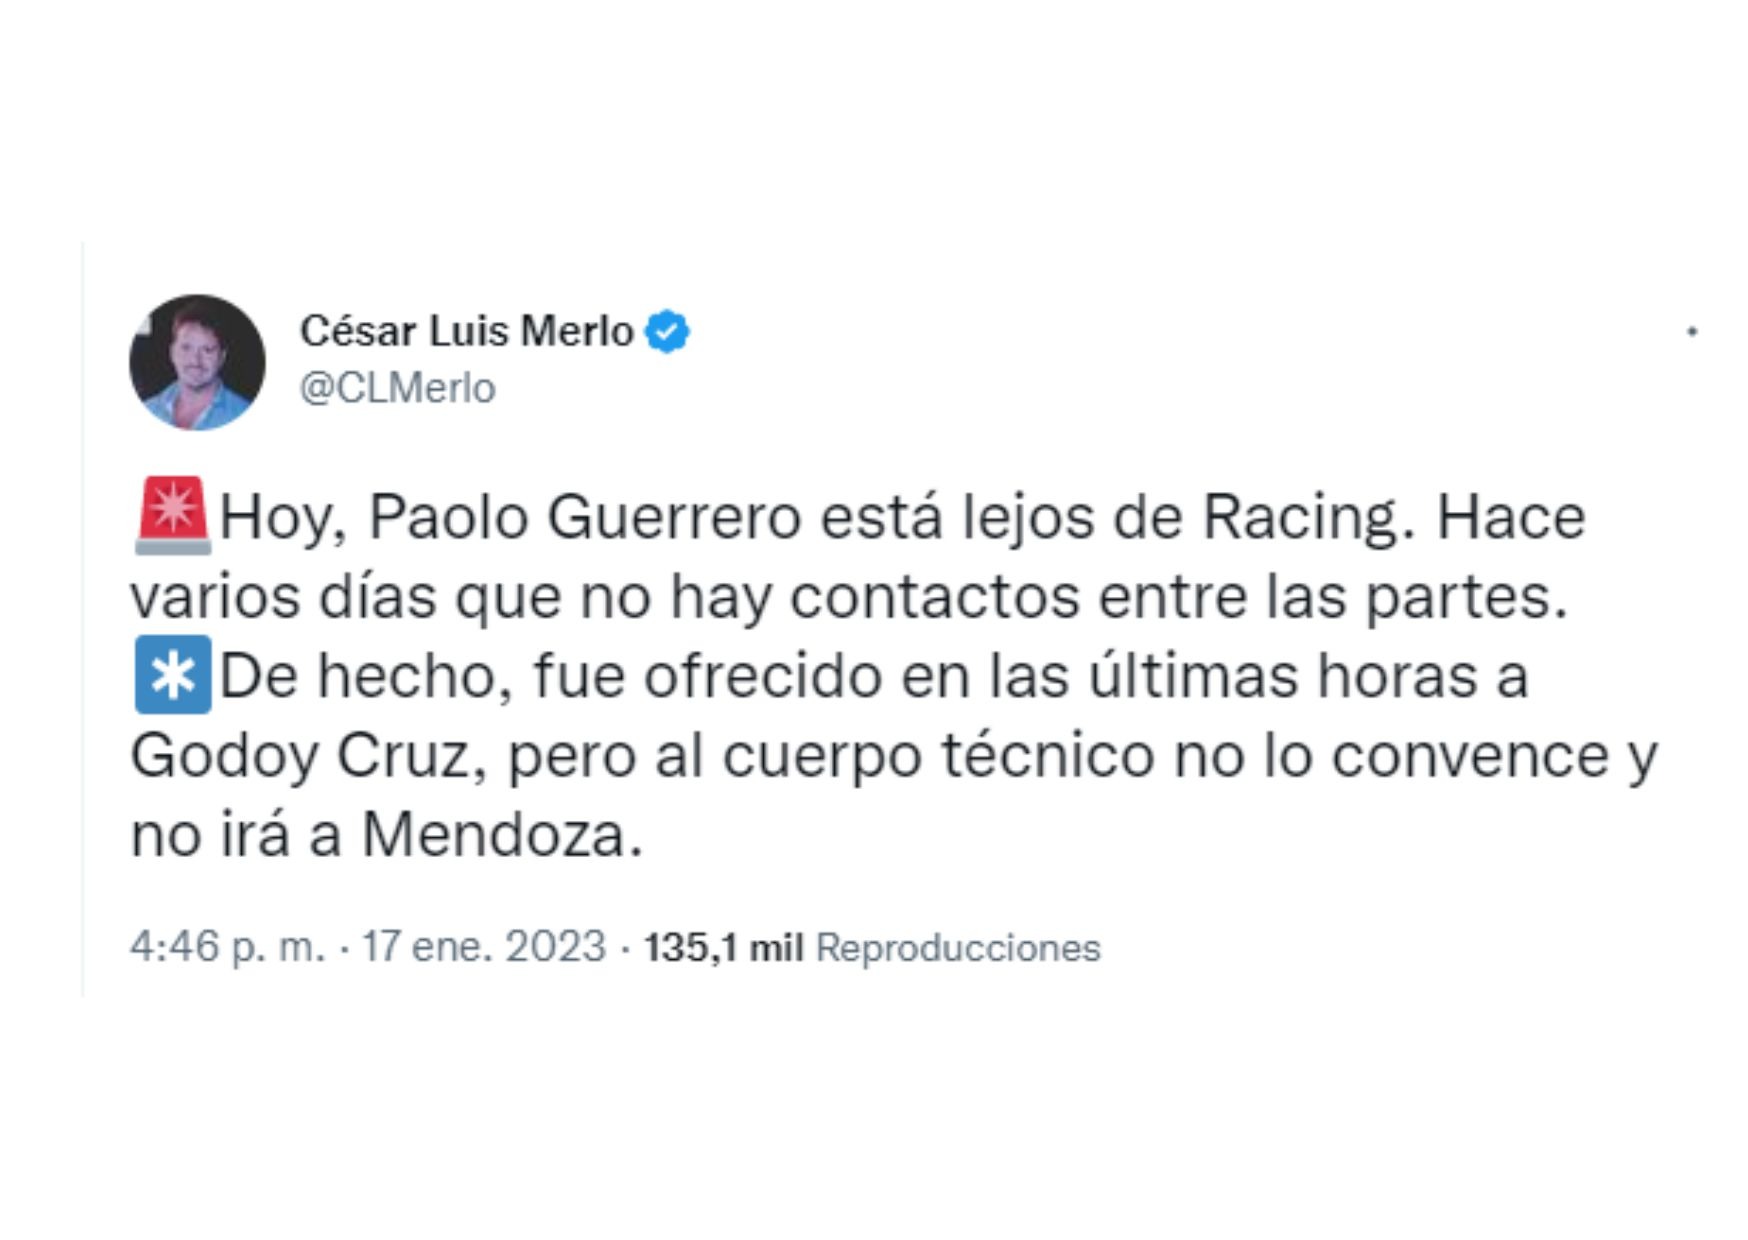 Tweet del periodista César Luis Merlo